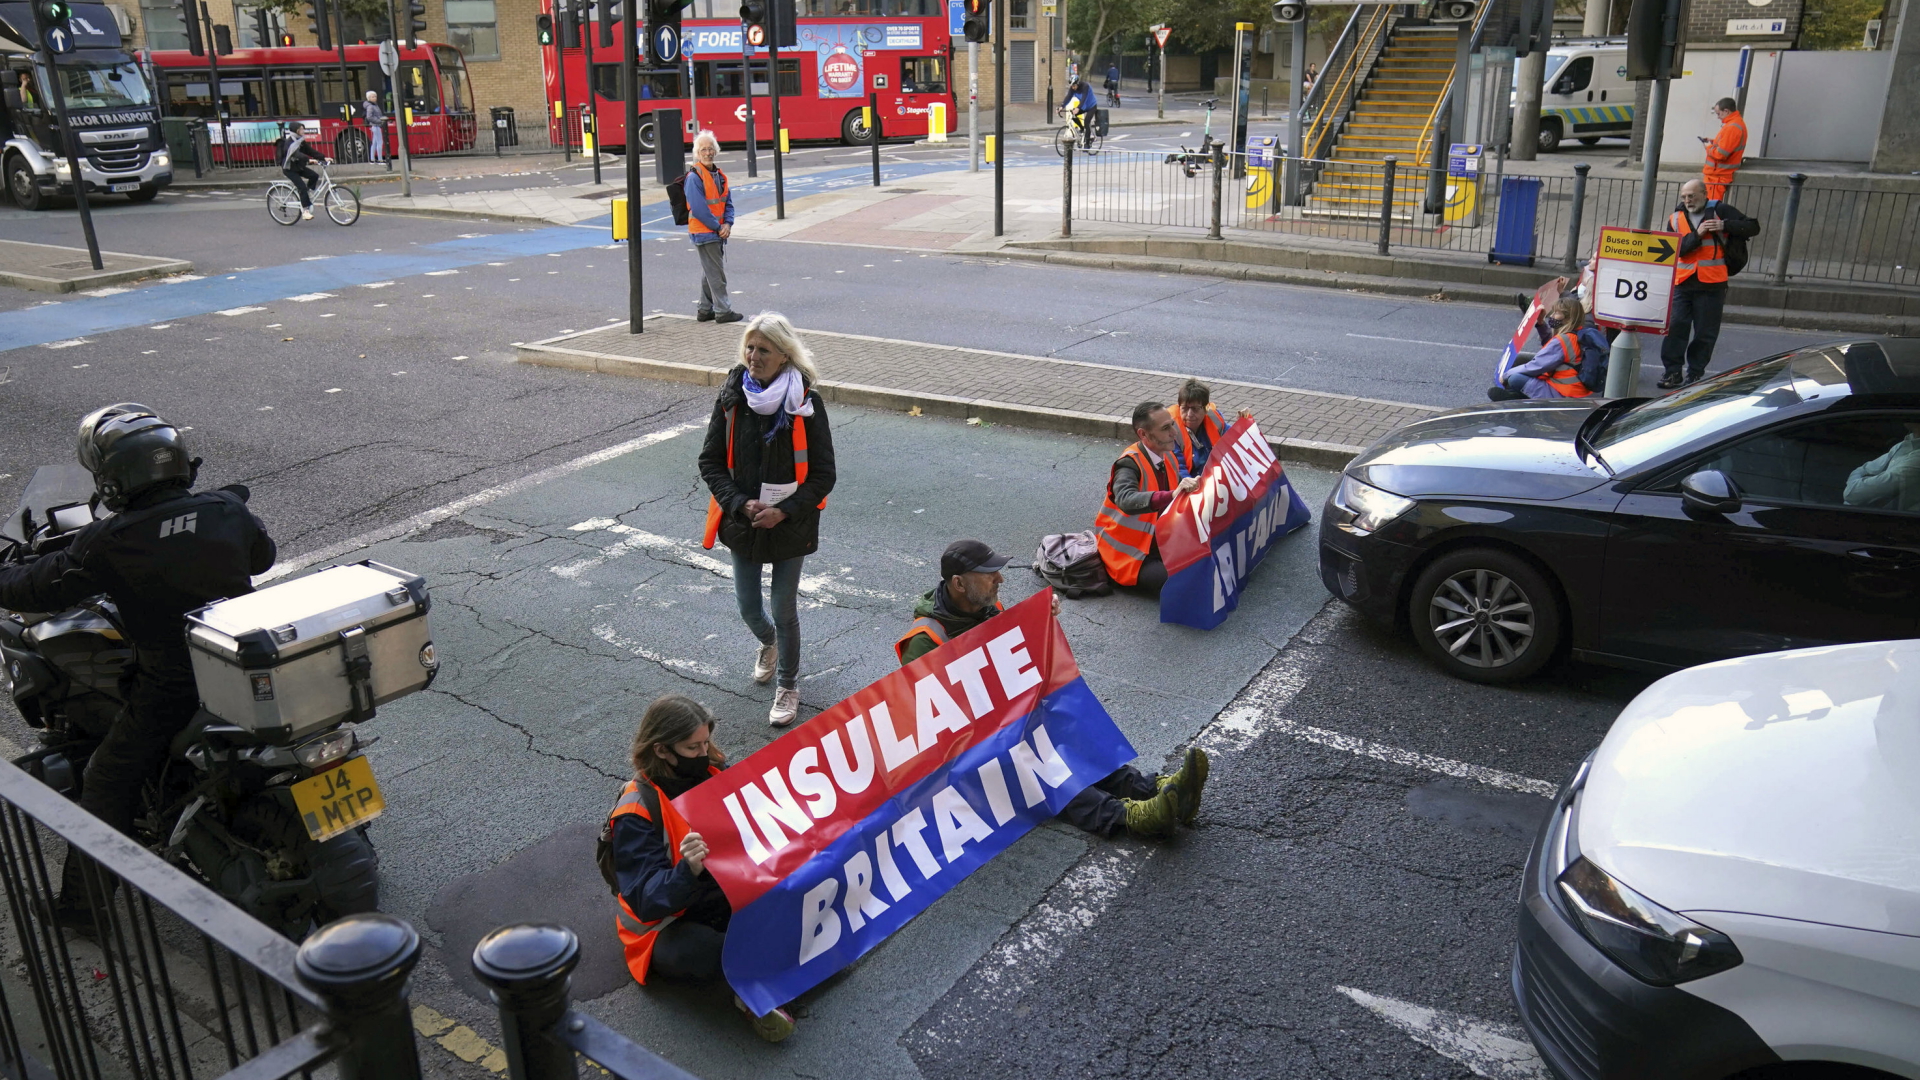 Demontranten blockieren eine Straßenkreizung in London und fordern eine bessere Energiepolitik Großbritanniens | AP